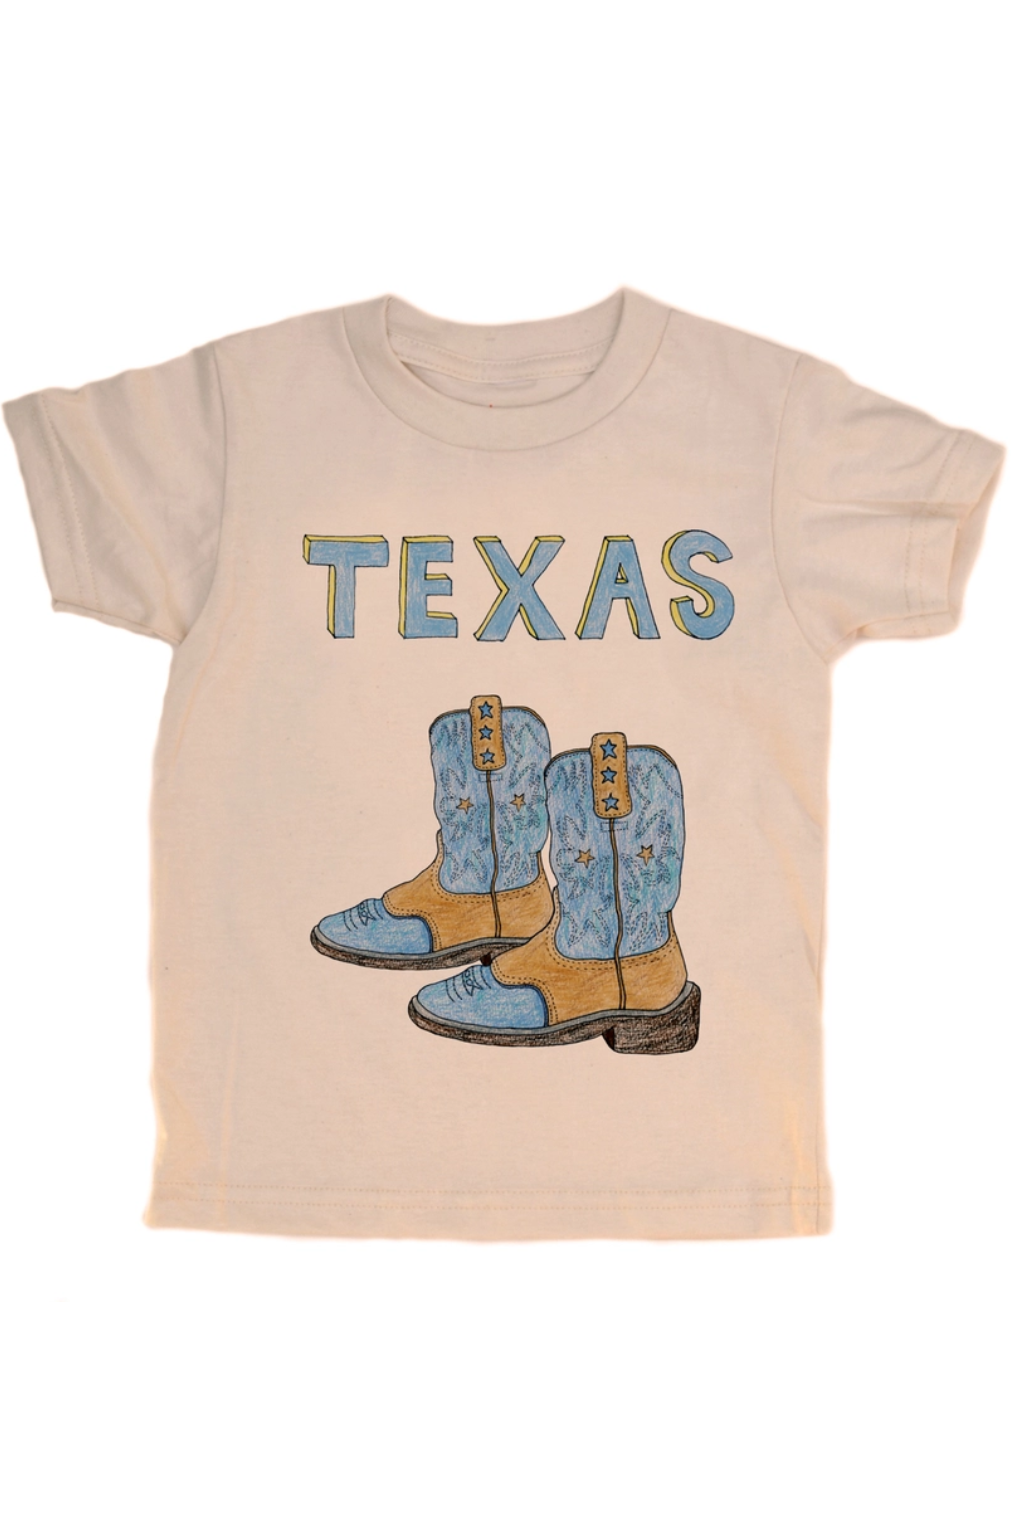 Texas Boots Tee - Blue